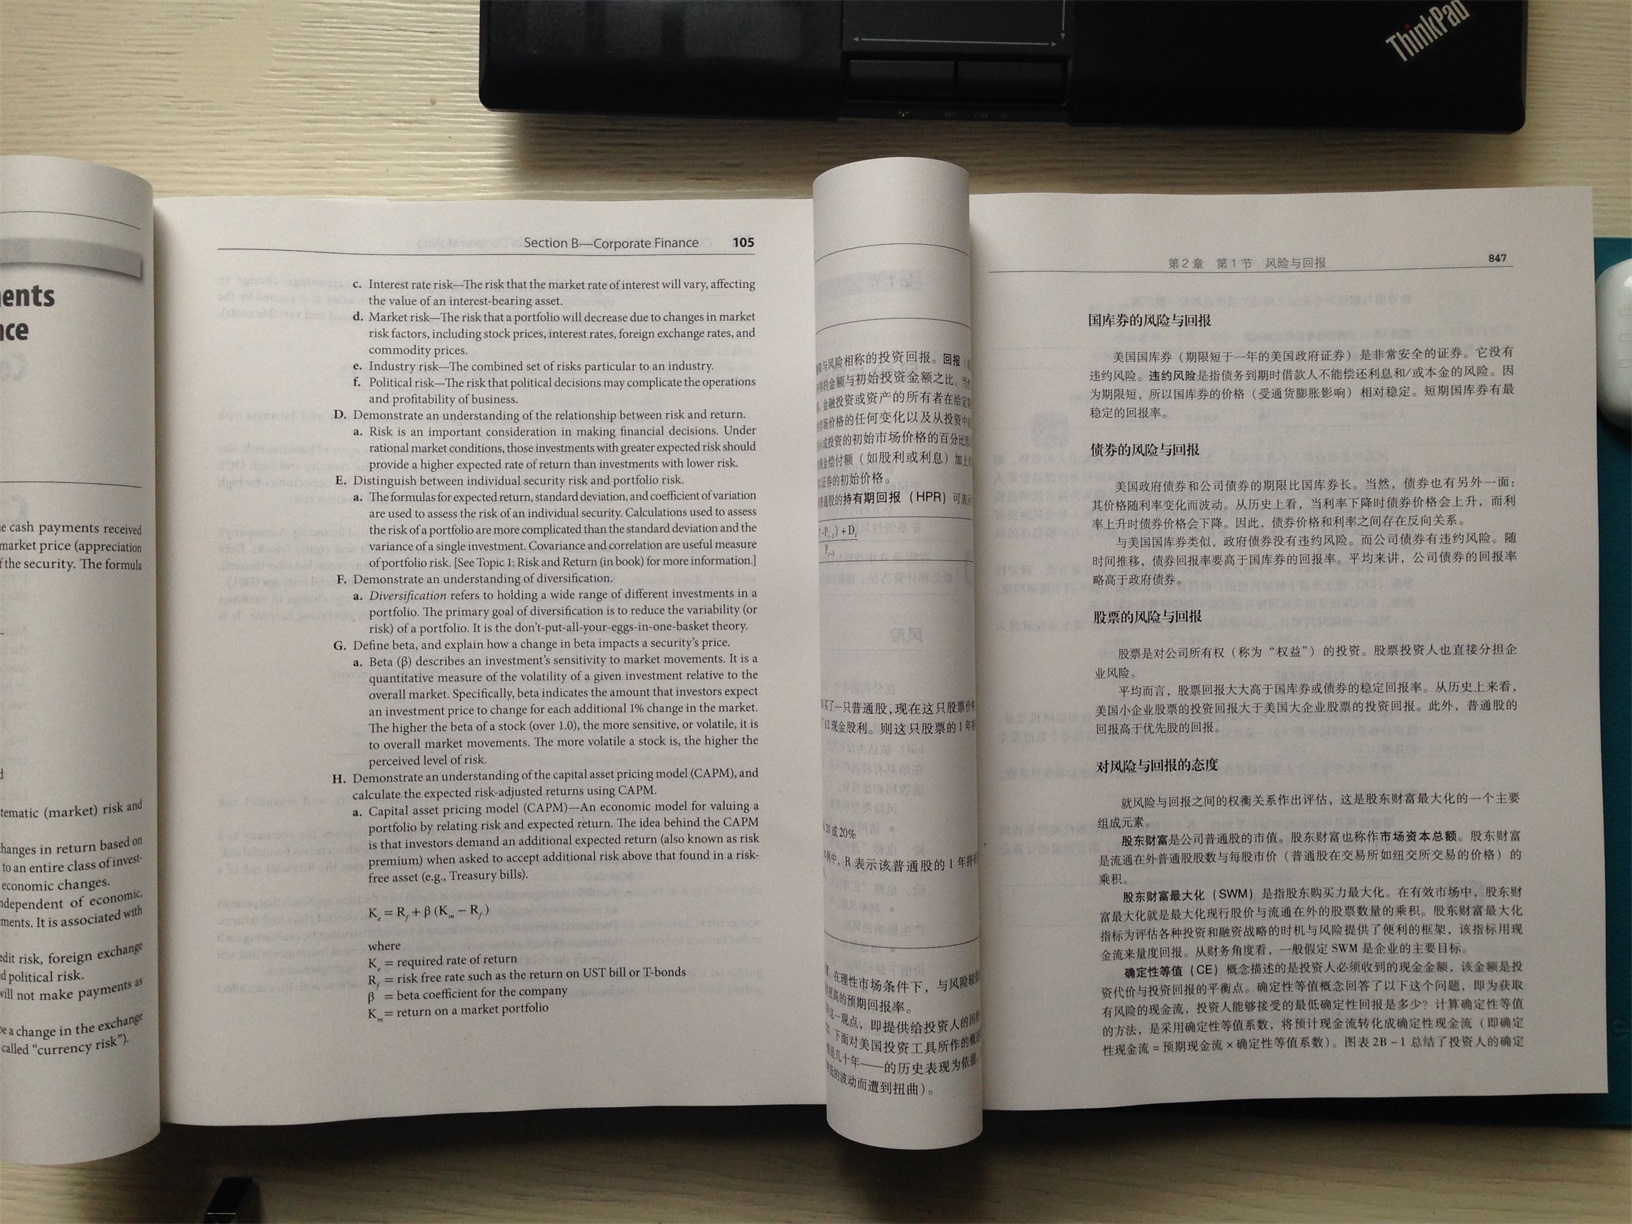 质量不错。正版书。每本都有600多页，很厚的哦。内页印刷清晰，字体漂亮。上册是英文，下册是中文。